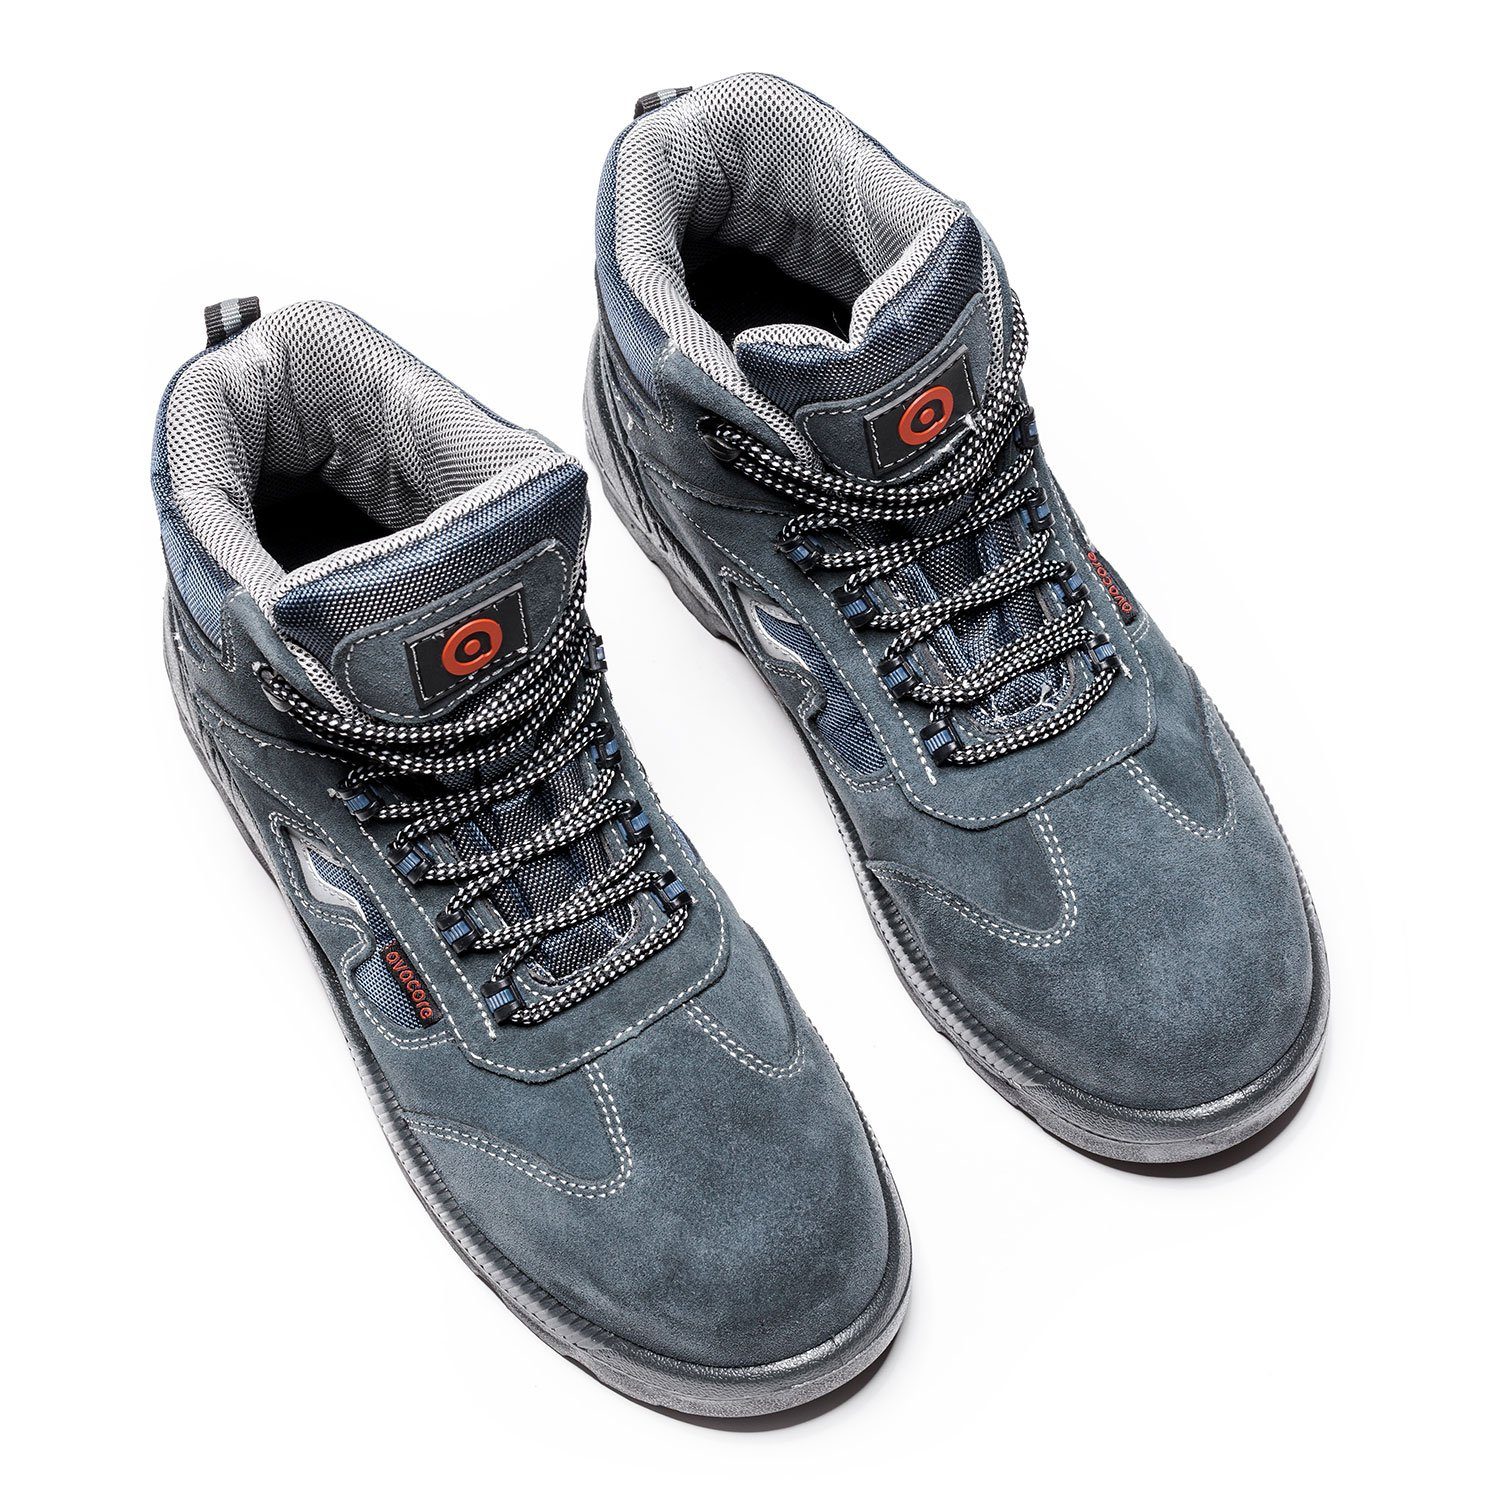 Schuhe Sicherheitsschuhe Avacore Prama Arbeitsschuh Doppelte Kälte-Isolierung, Composite-Verstärkungen, S1P-Sicherheitsklasse